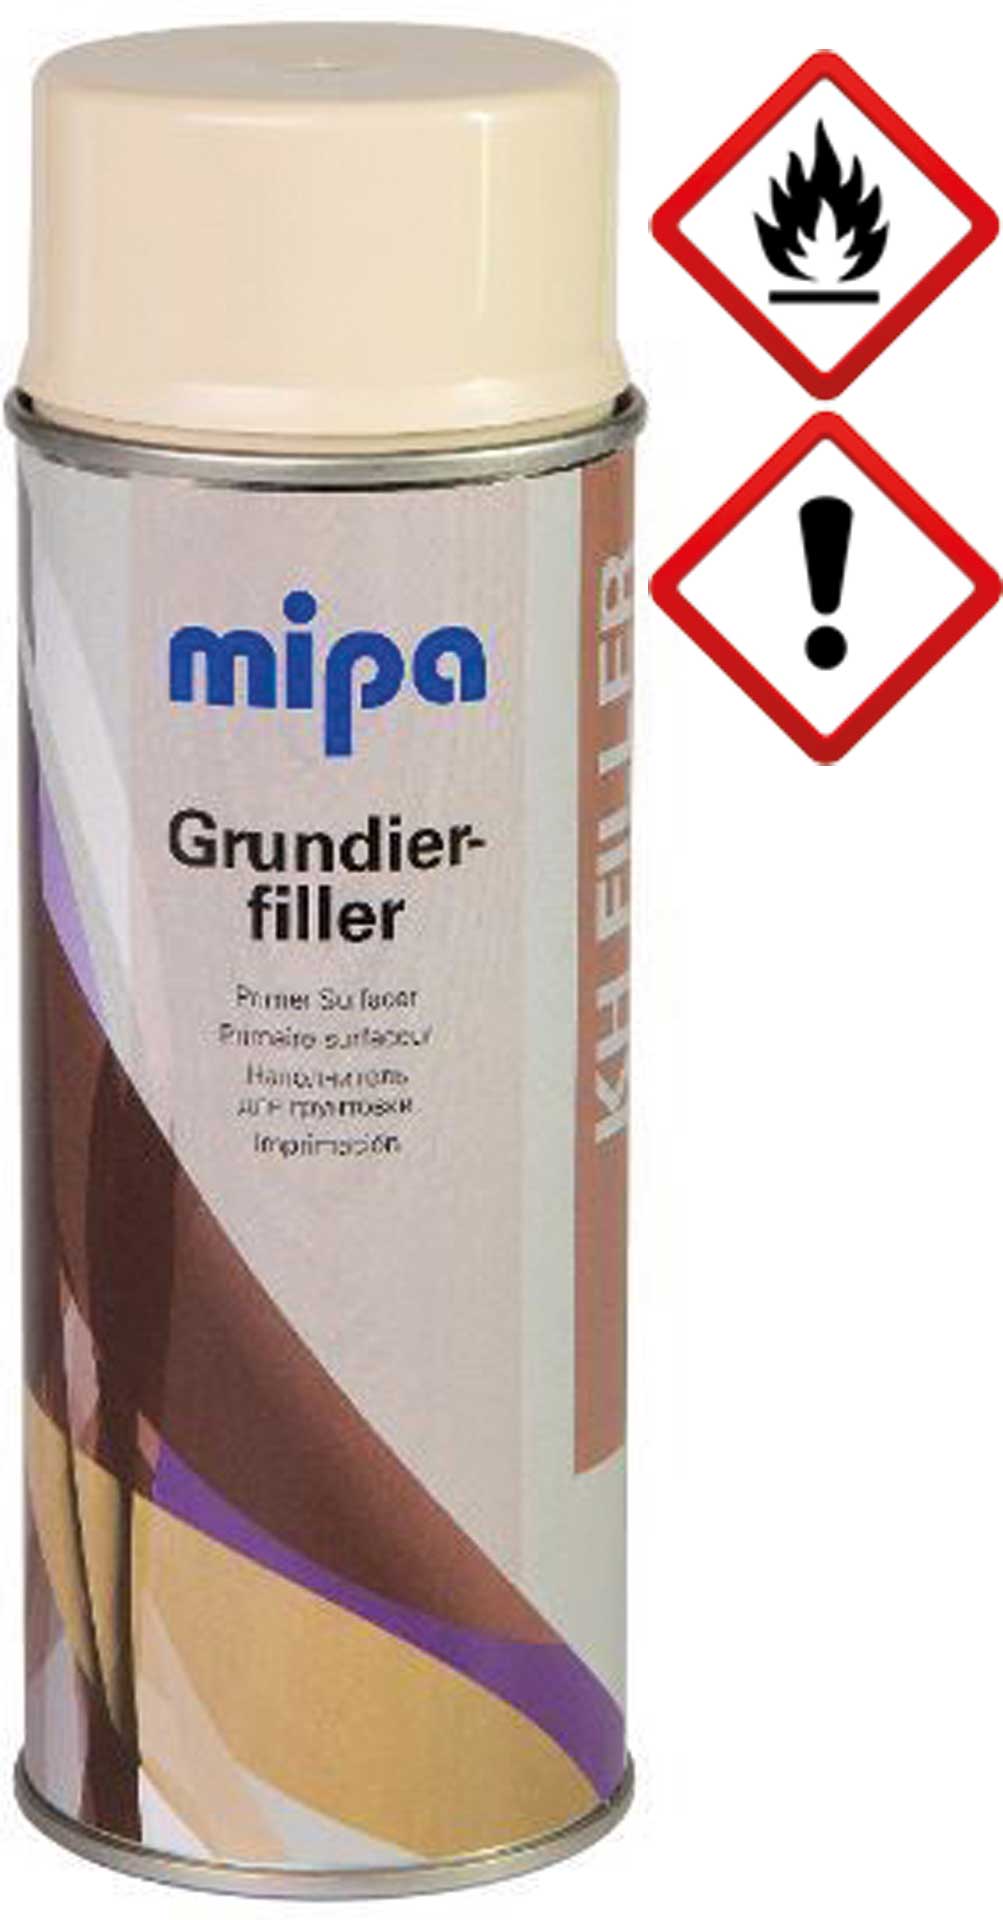 mipa Grundierfiller-Spray 400ml Farbe beige - gelblich Grundierung